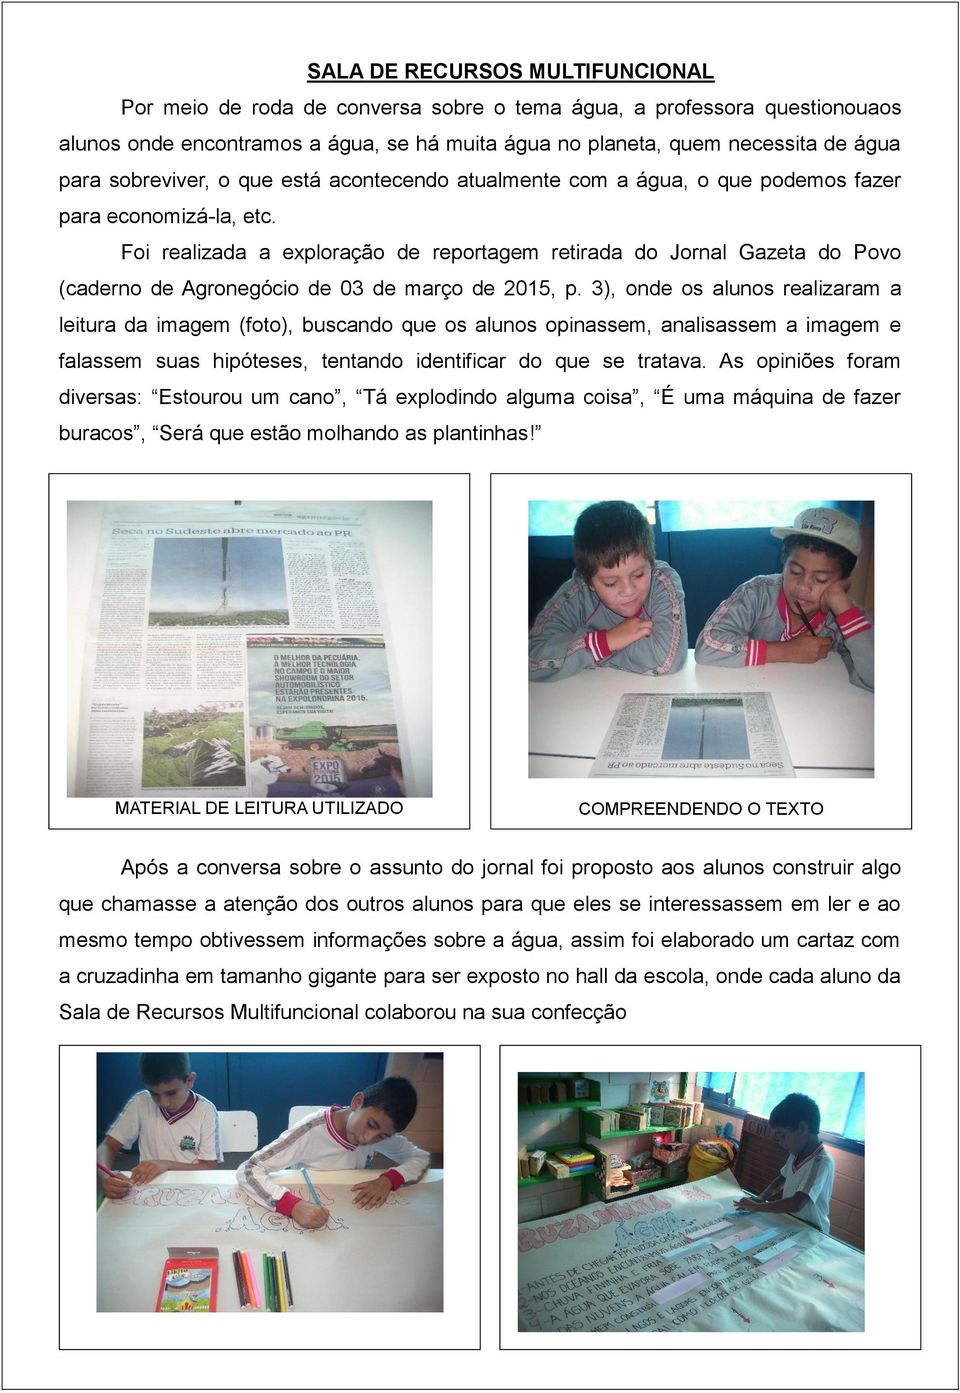 Foi realizada a exploração de reportagem retirada do Jornal Gazeta do Povo (caderno de Agronegócio de 03 de março de 2015, p.